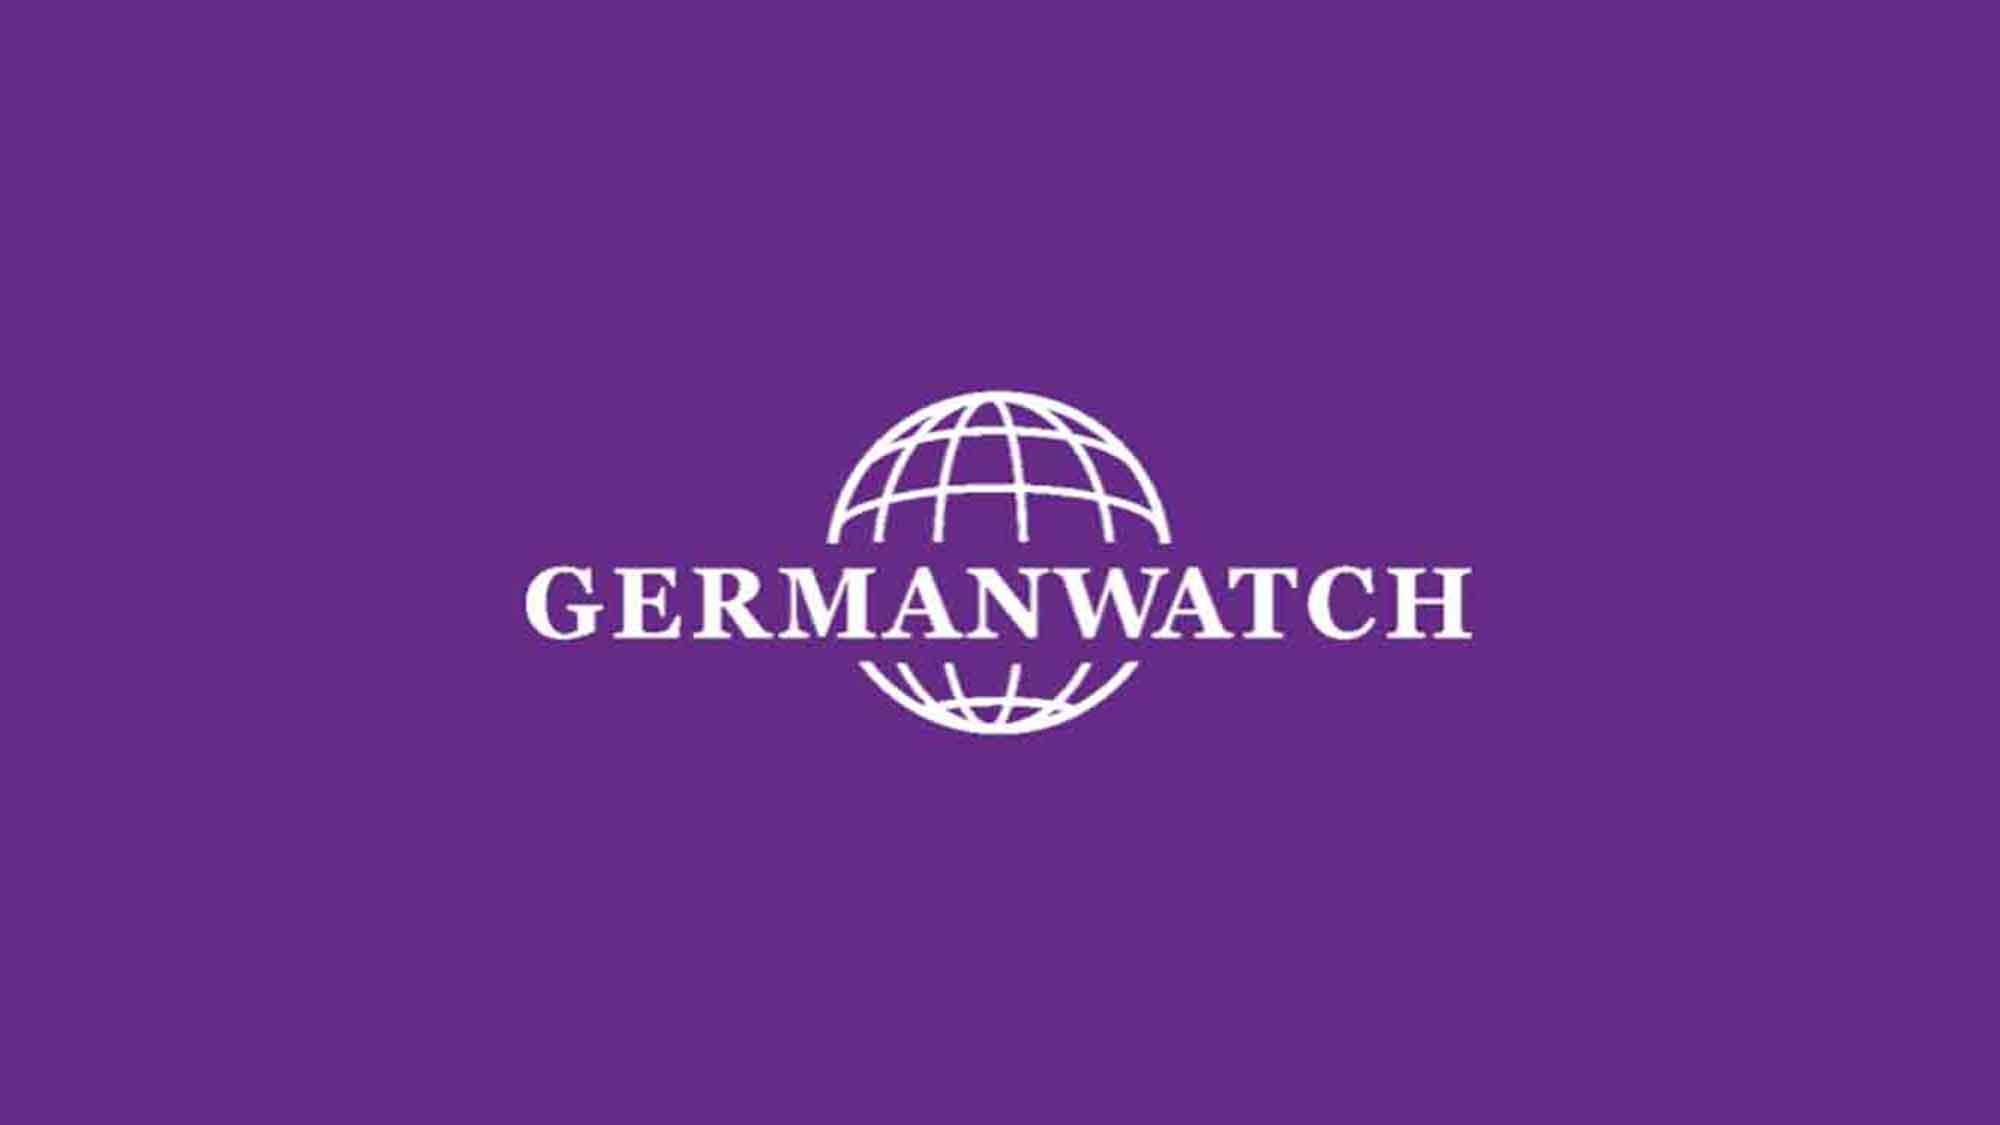 Germanwatch: Bundesregierung muss bei CO2 Abscheidung auf Pfad der Vernunft zurückkehren